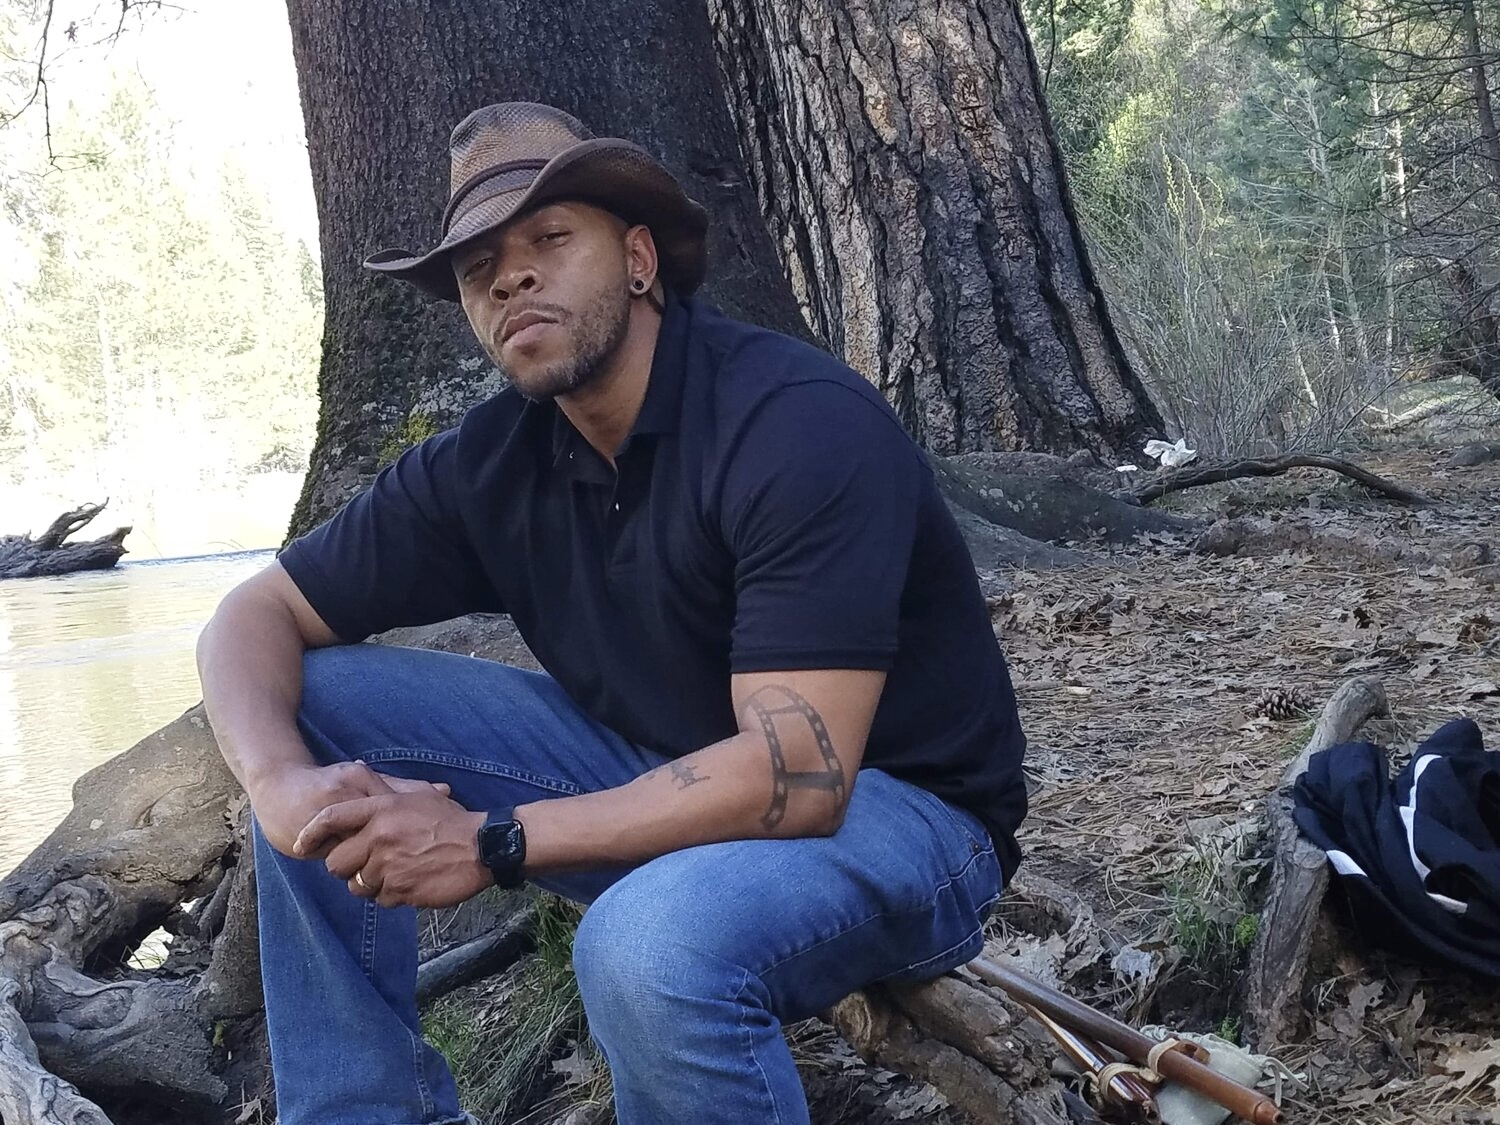 A Black man wearing a cowboy hat sits outside